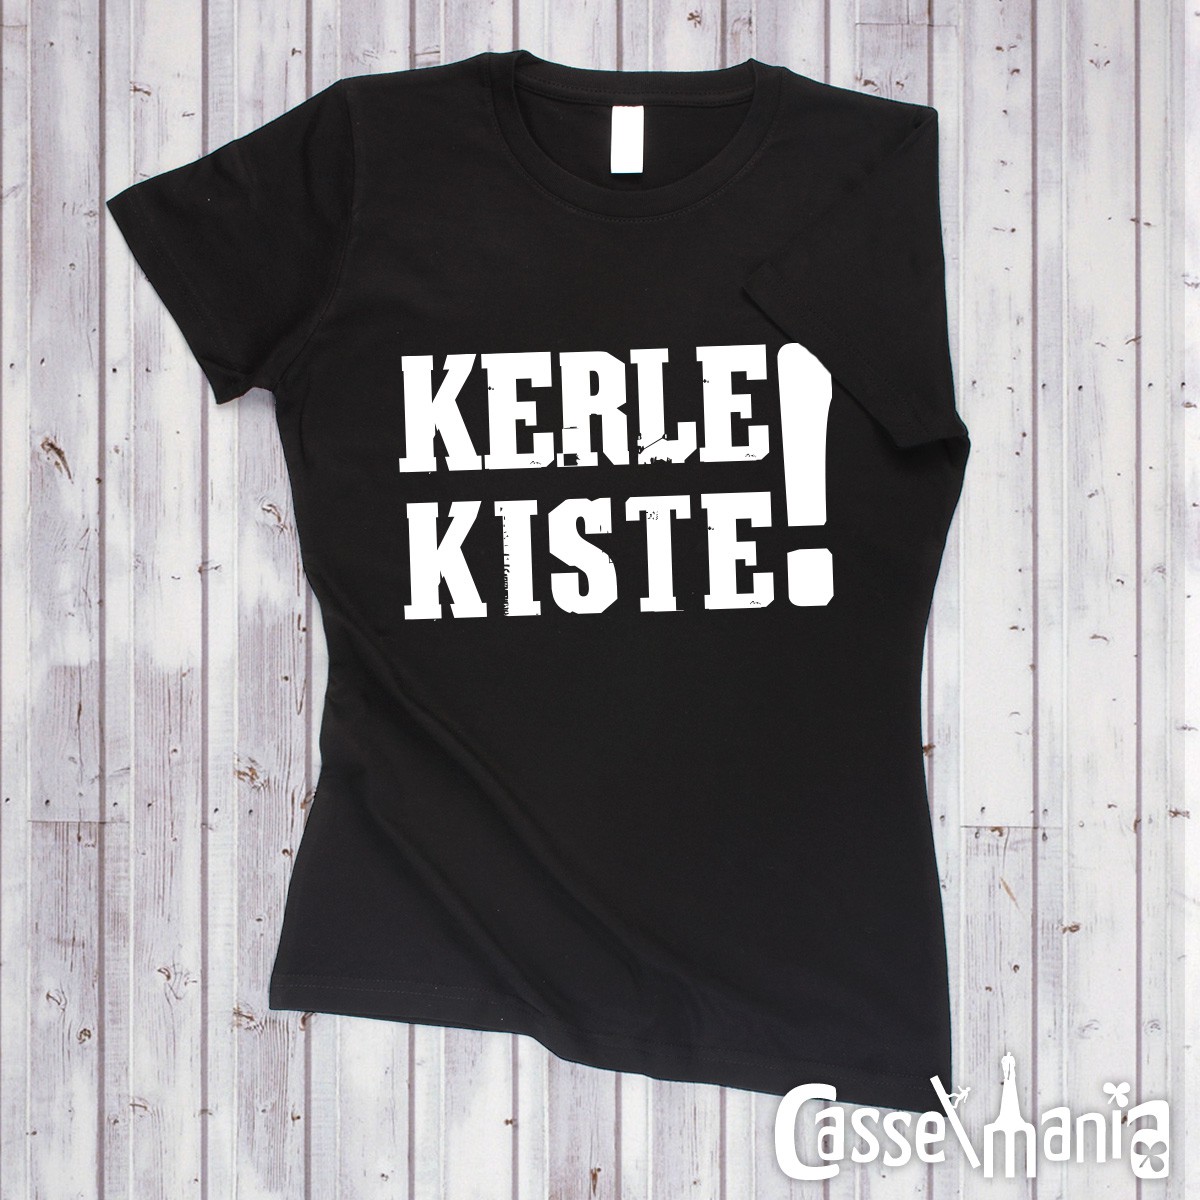 Kerle Kiste - Women